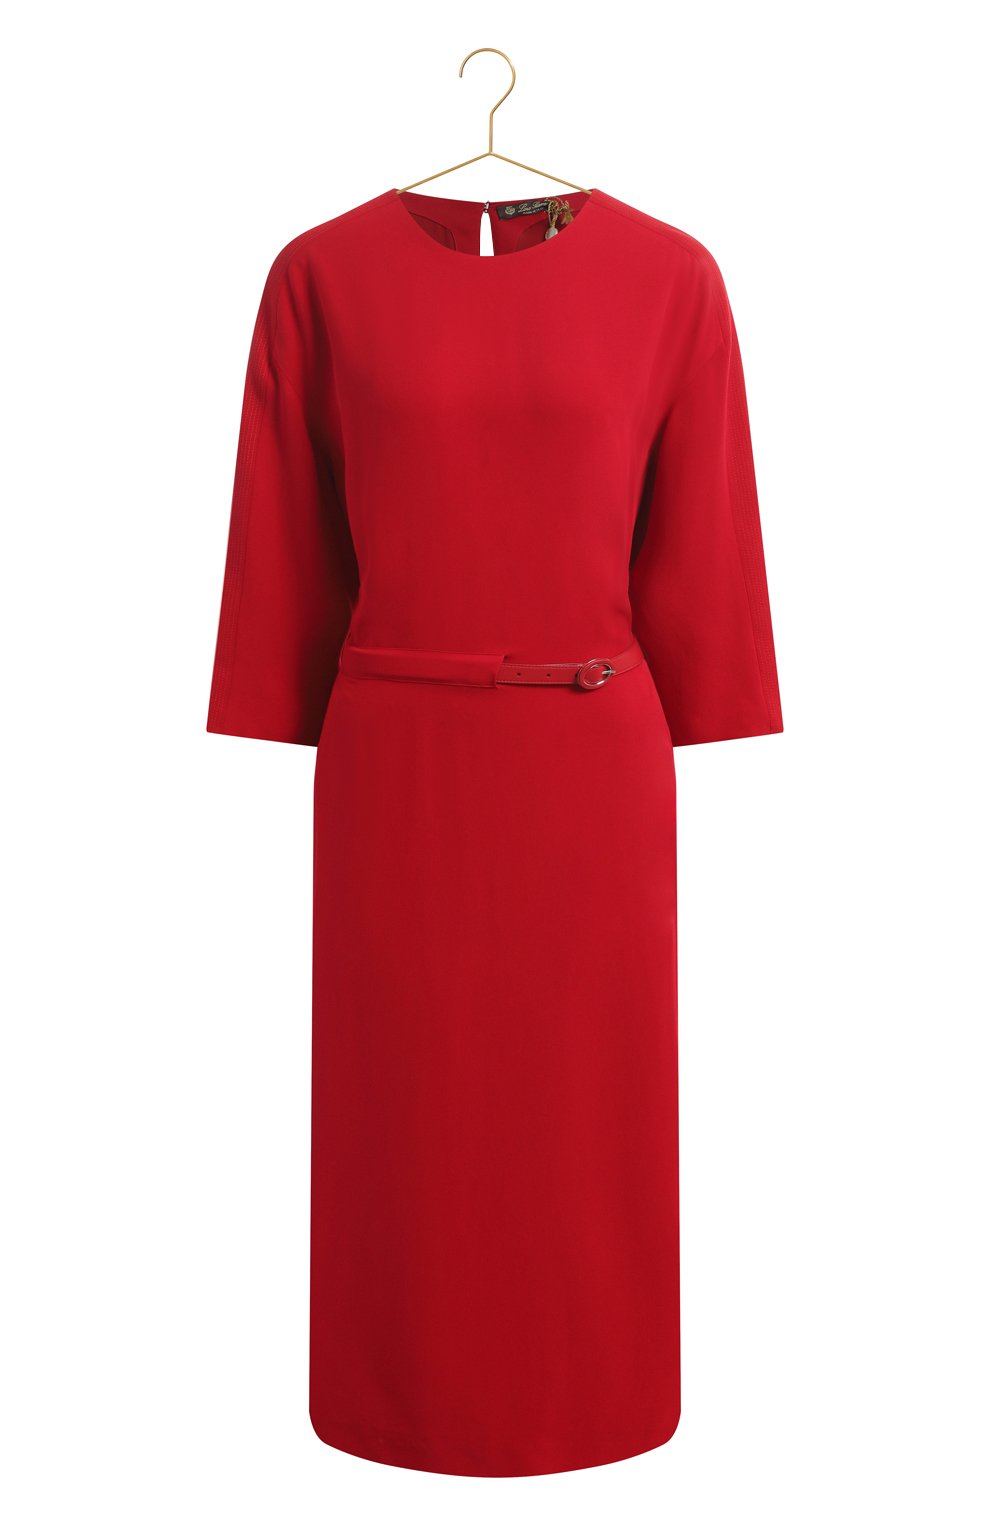 Шелковое платье | Loro Piana | Красный - 1